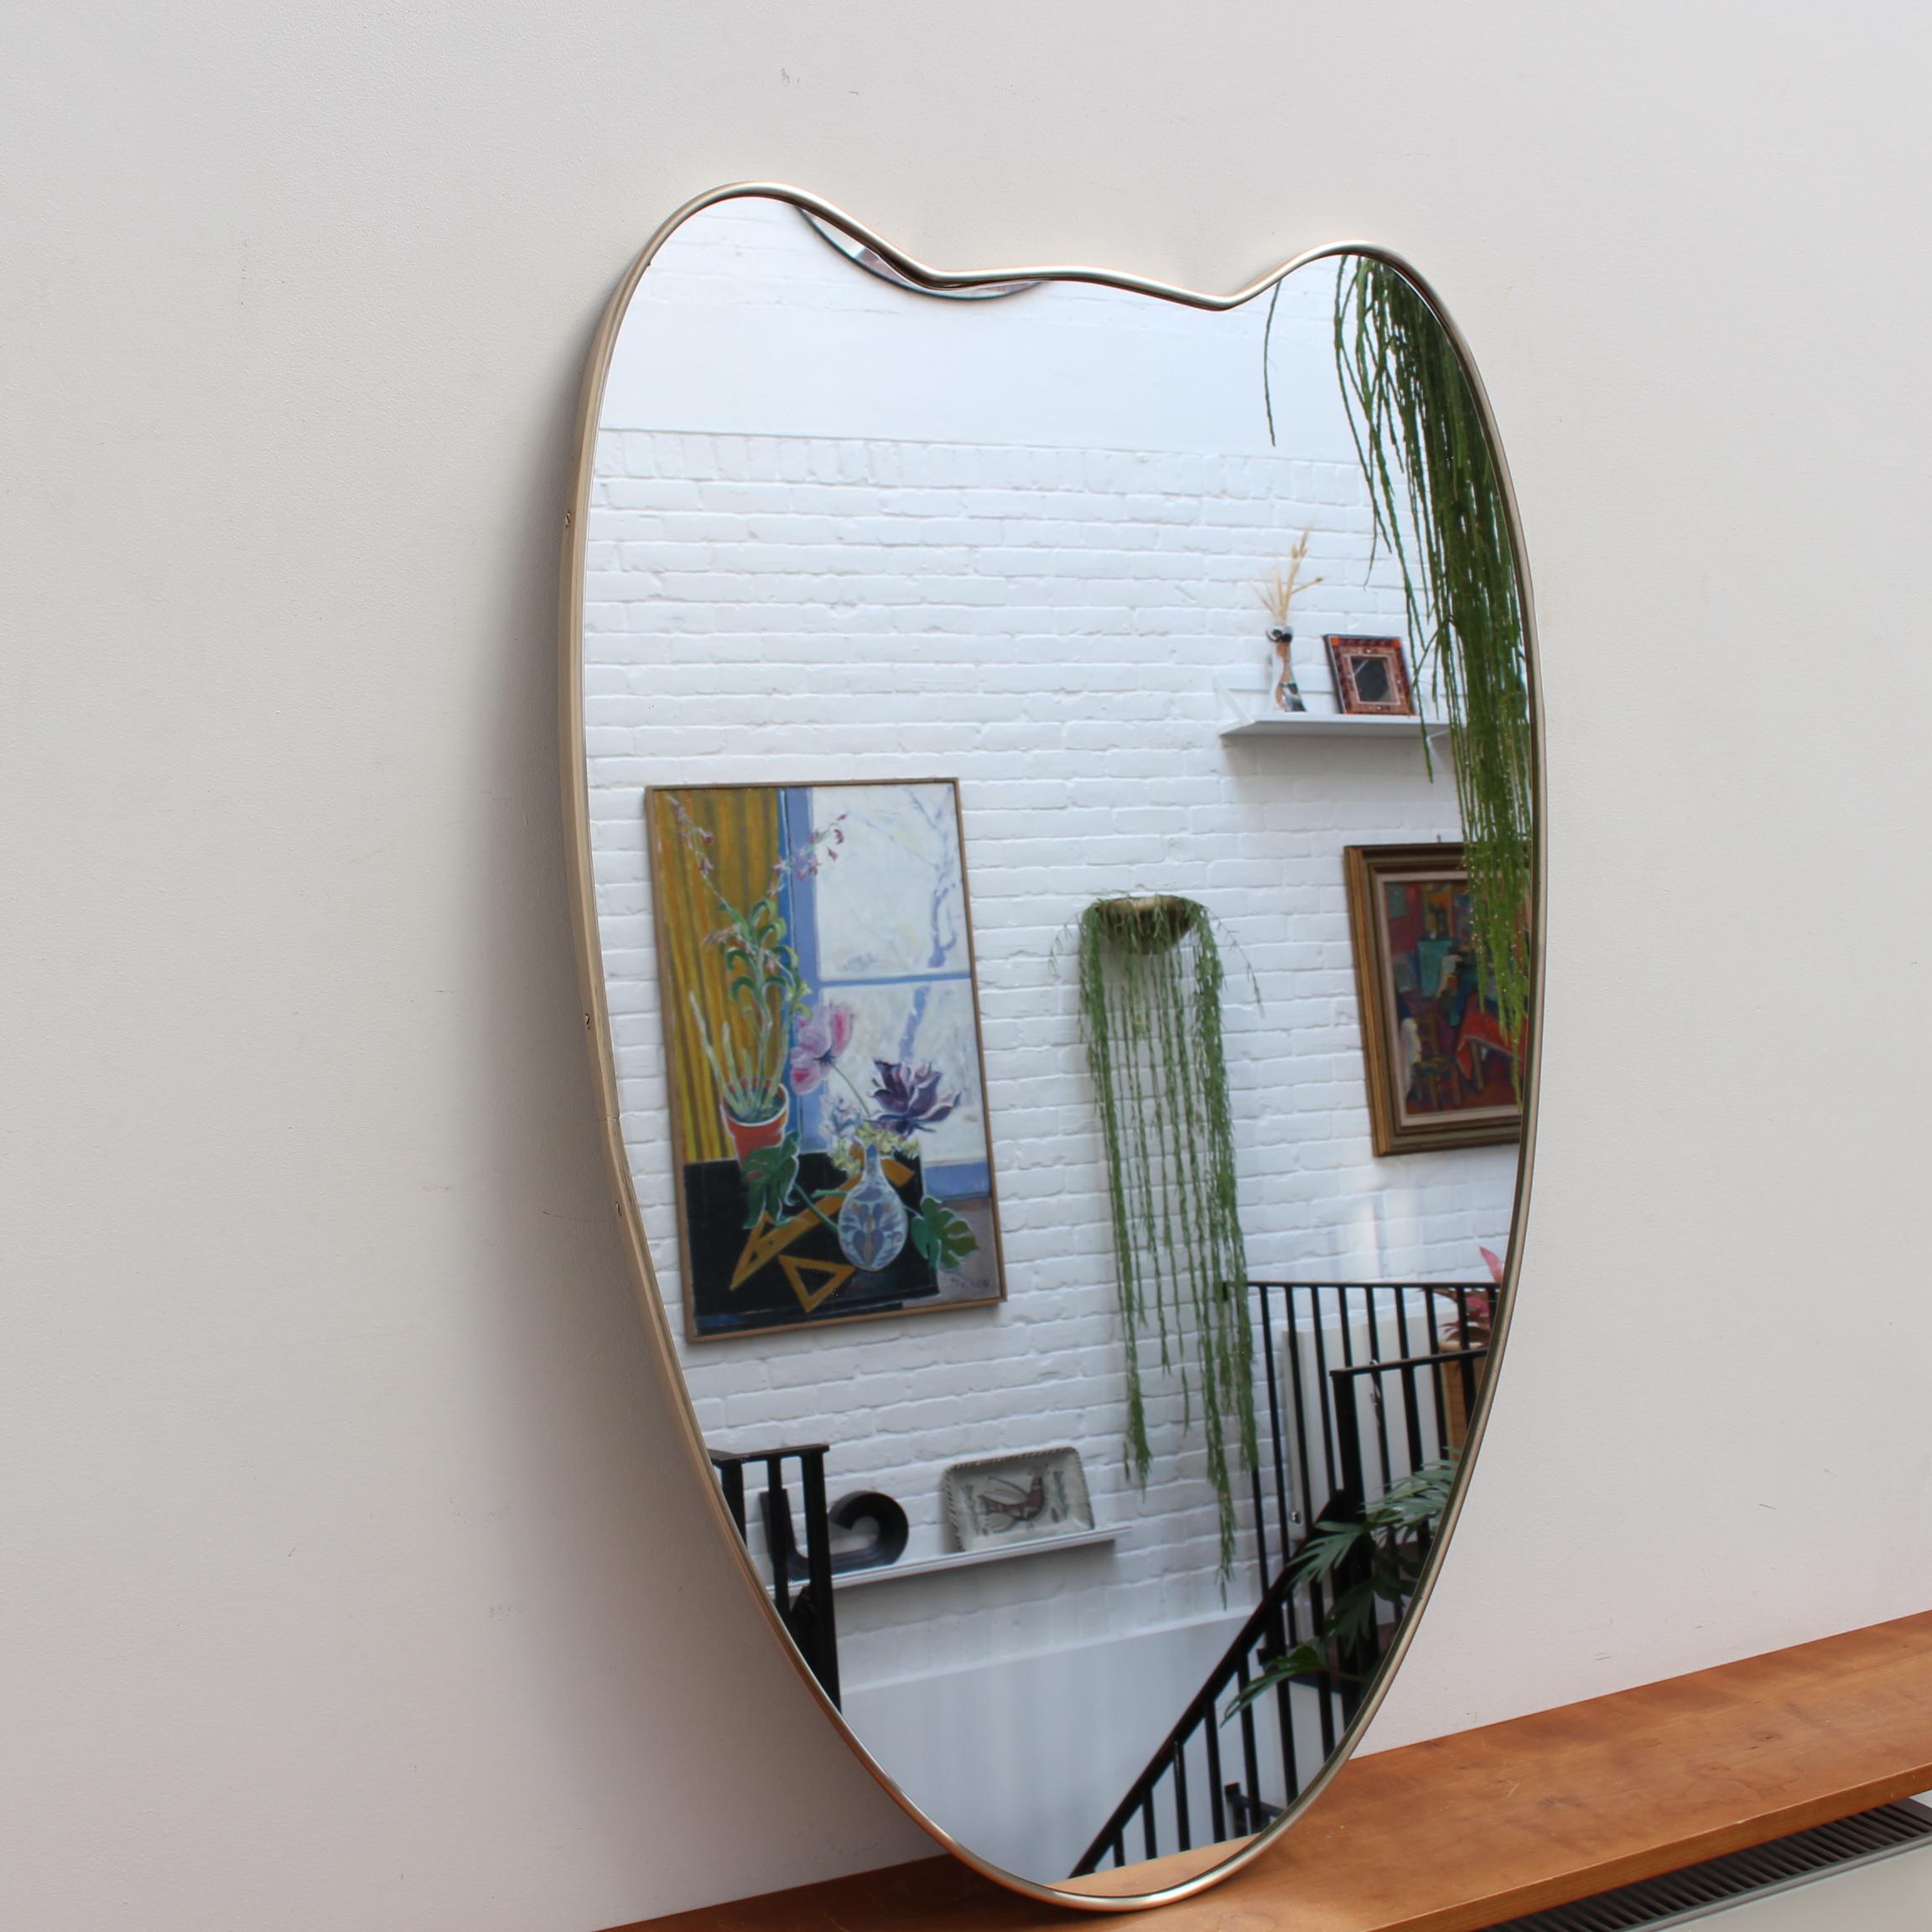 Miroir mural italien du milieu du siècle avec cadre en laiton (circa 1950s). Le miroir a une forme classique et distinctive dans un style moderne. Il est en très bon état général. Une belle patine vieillie se développera au fil du temps sur le cadre